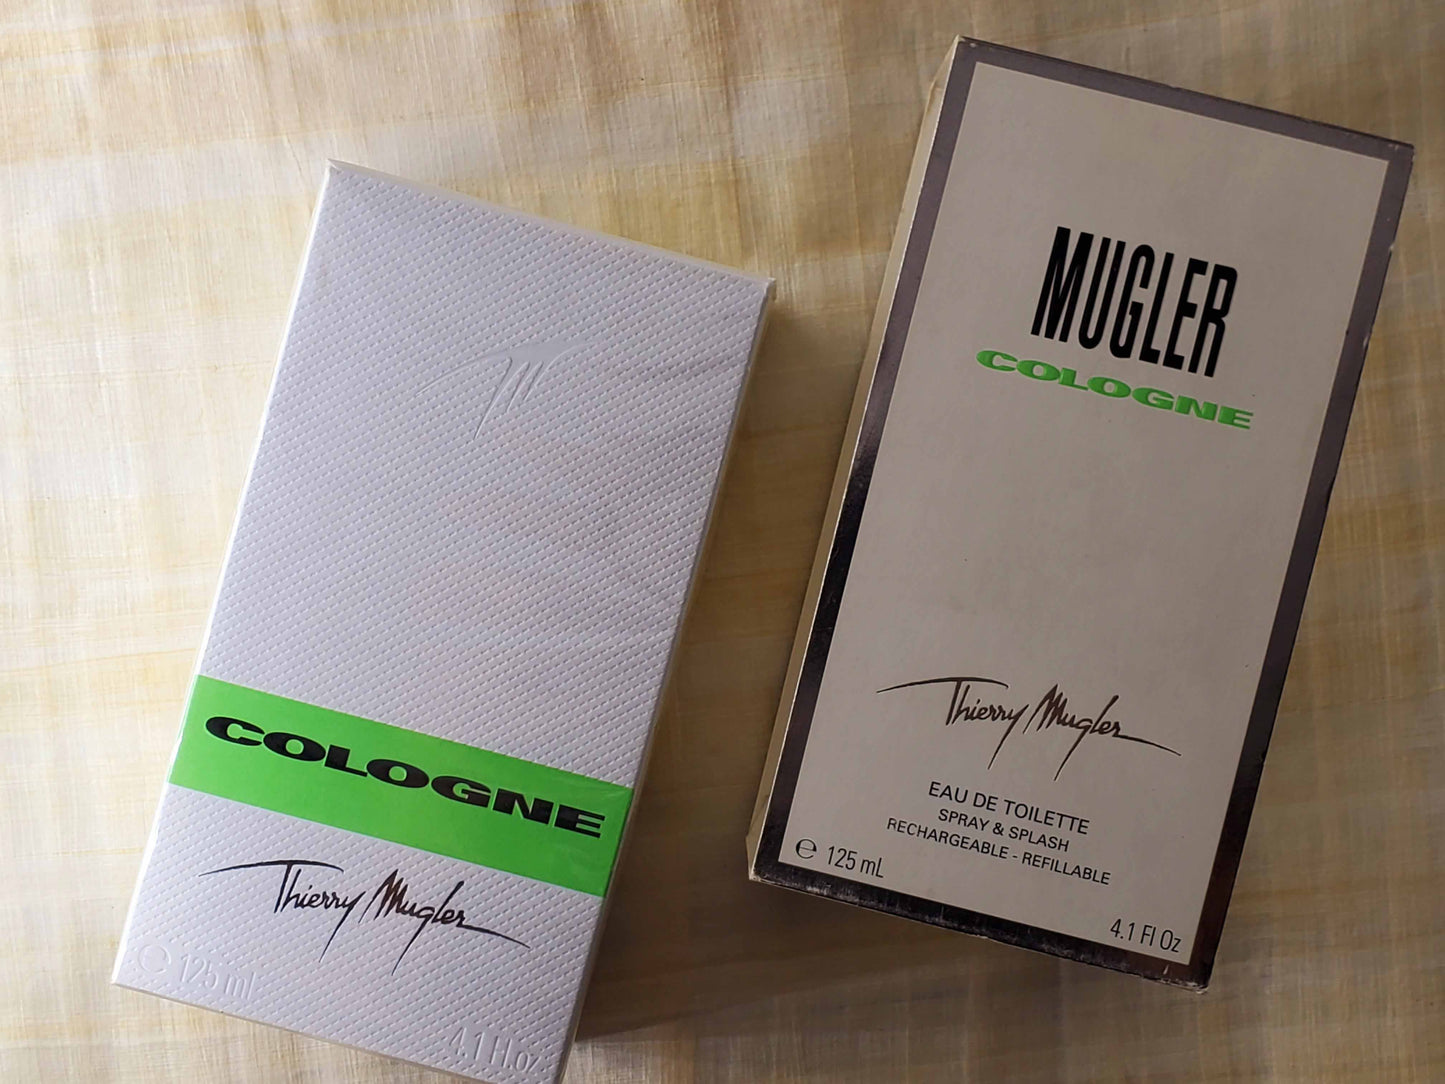 Mugler Cologne Mugler Unisex EDT Spray 125 ml 4.1 oz, Vintage, Rare, Sealed